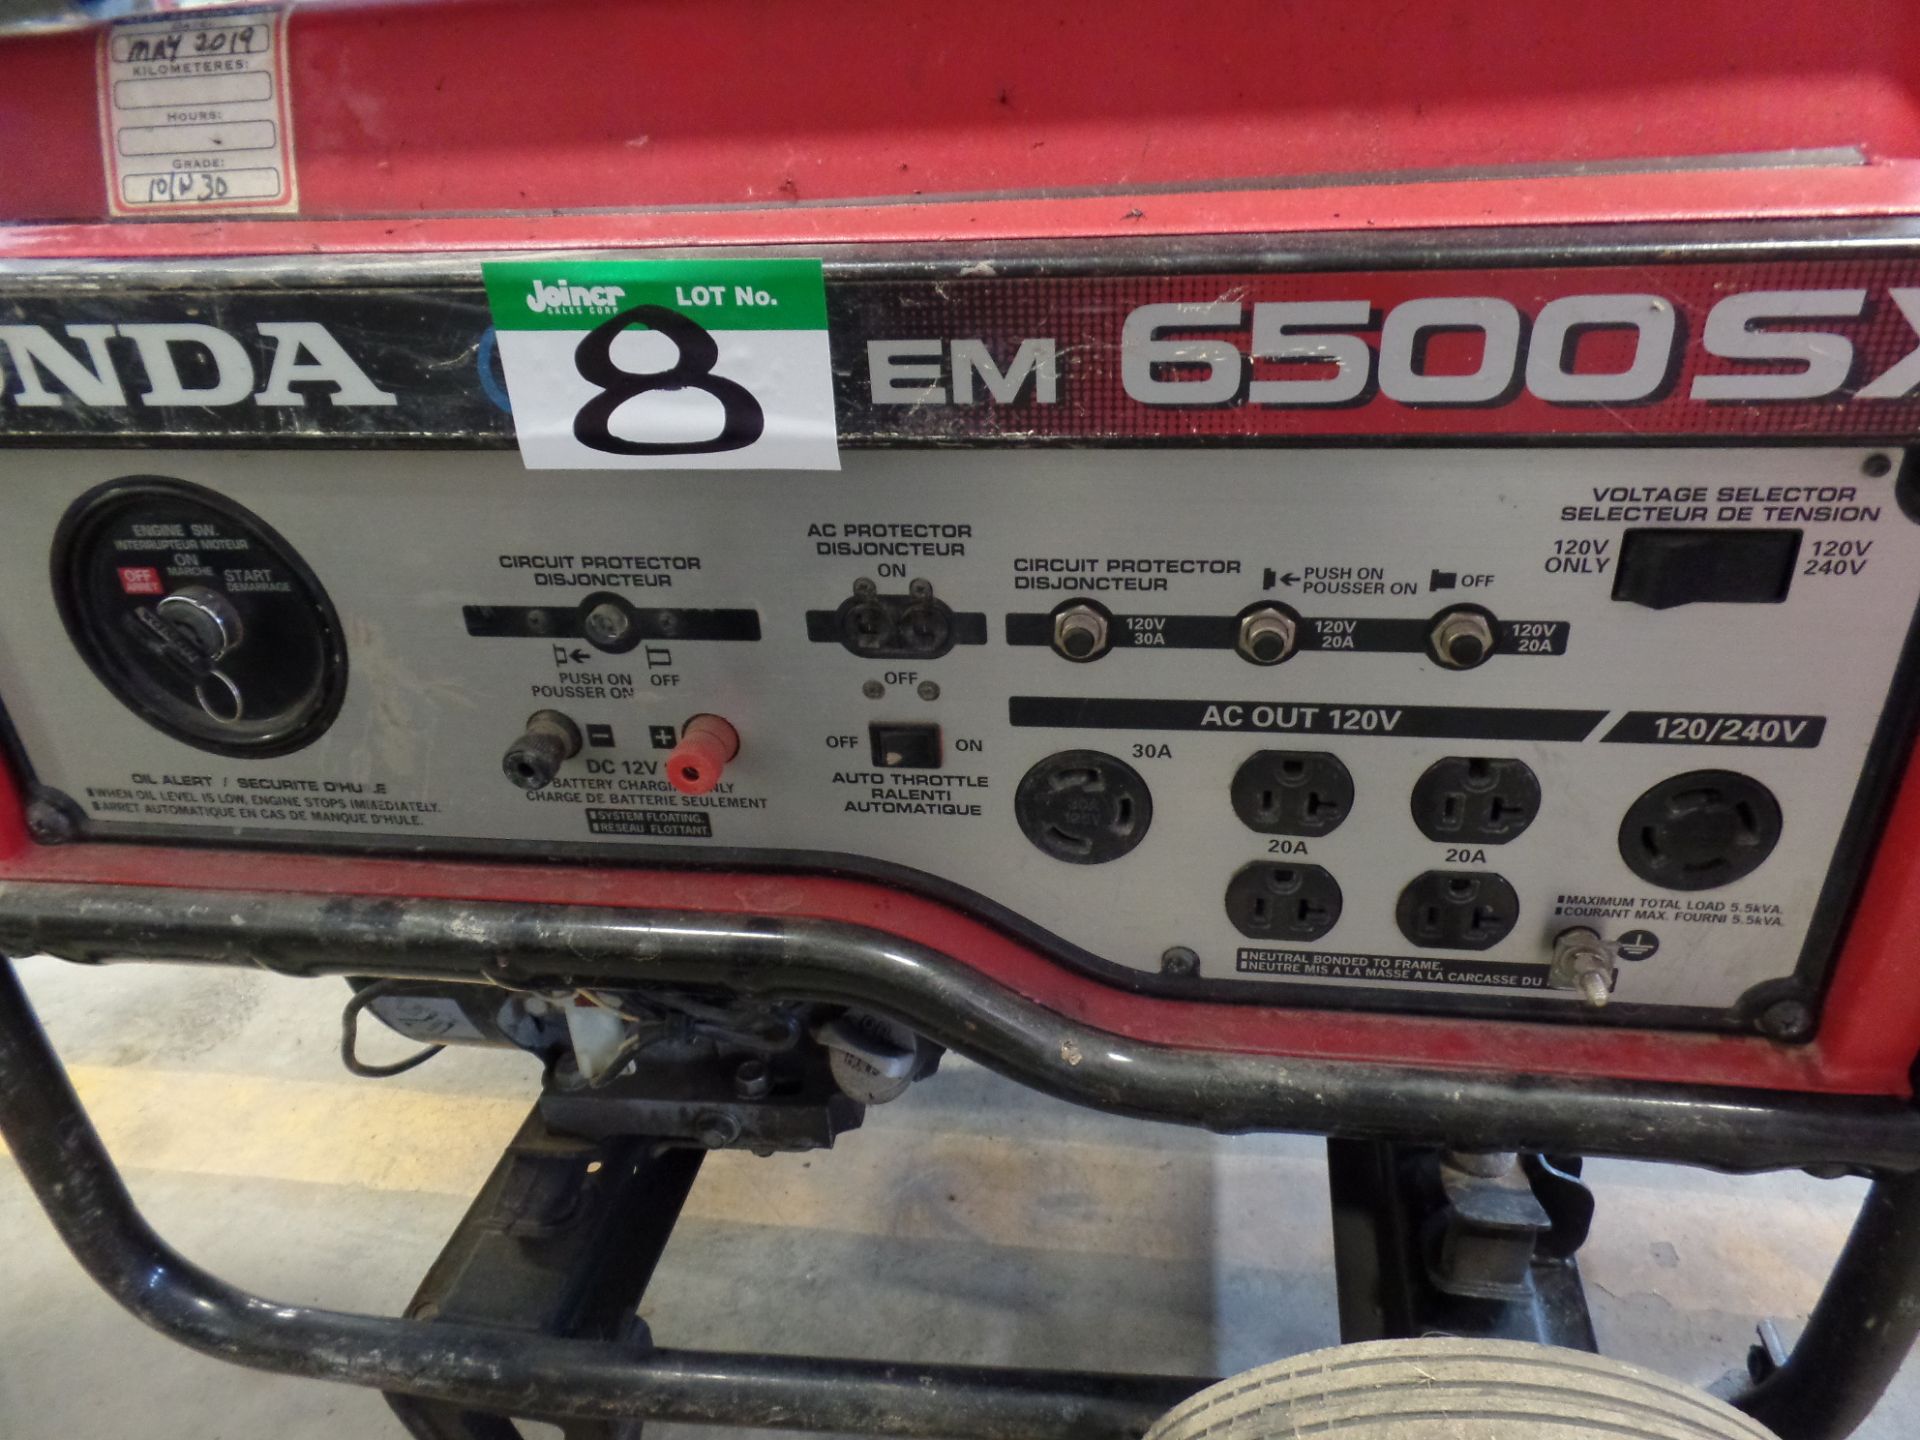 HONDA EM 6500 SX GAS GENERATOR - Image 2 of 2